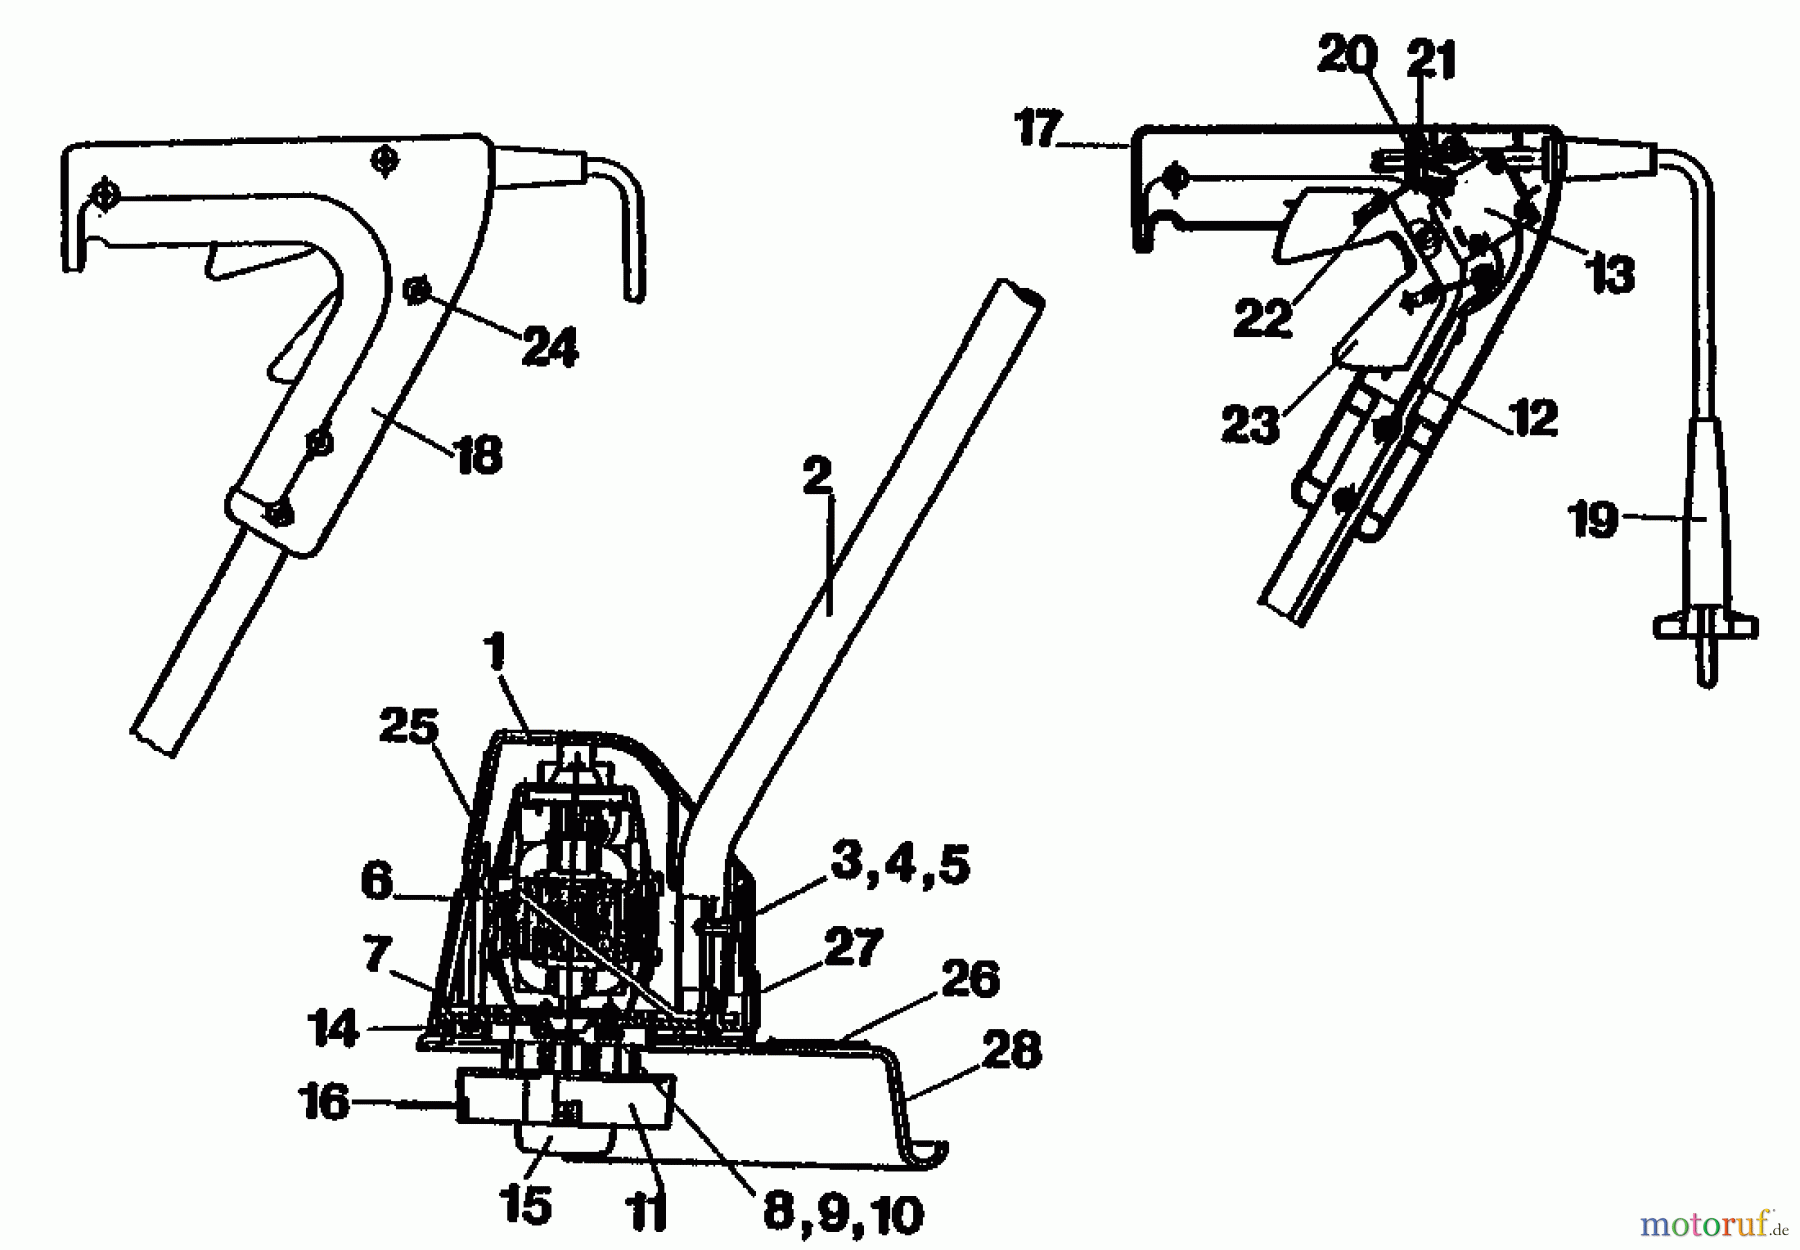  Golf Débroussailleuses électrique 320 RAPS 02858.06  (1991) Machine de base